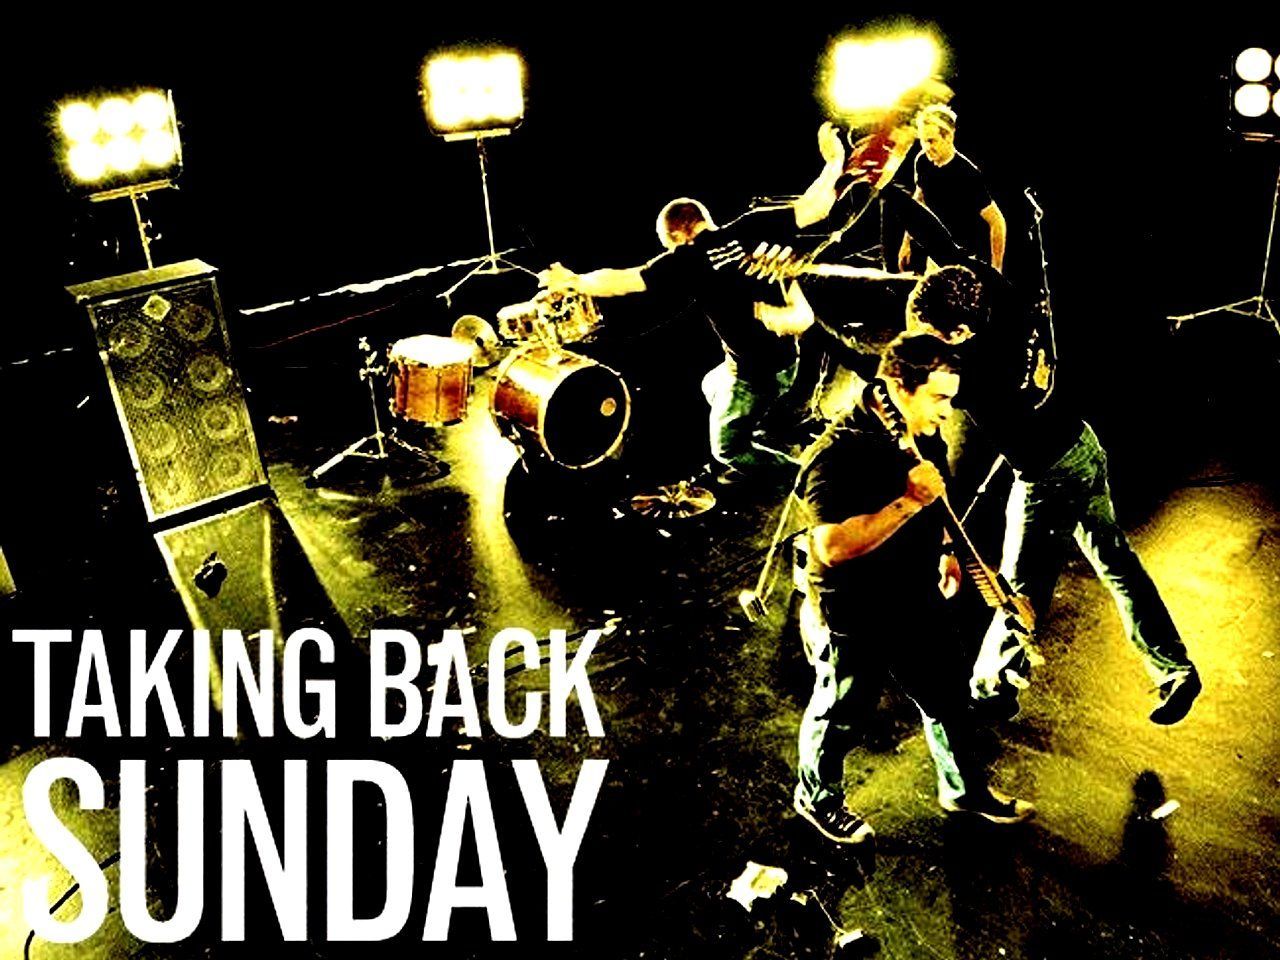 Taking Back Sunday. Taking back sunday .com